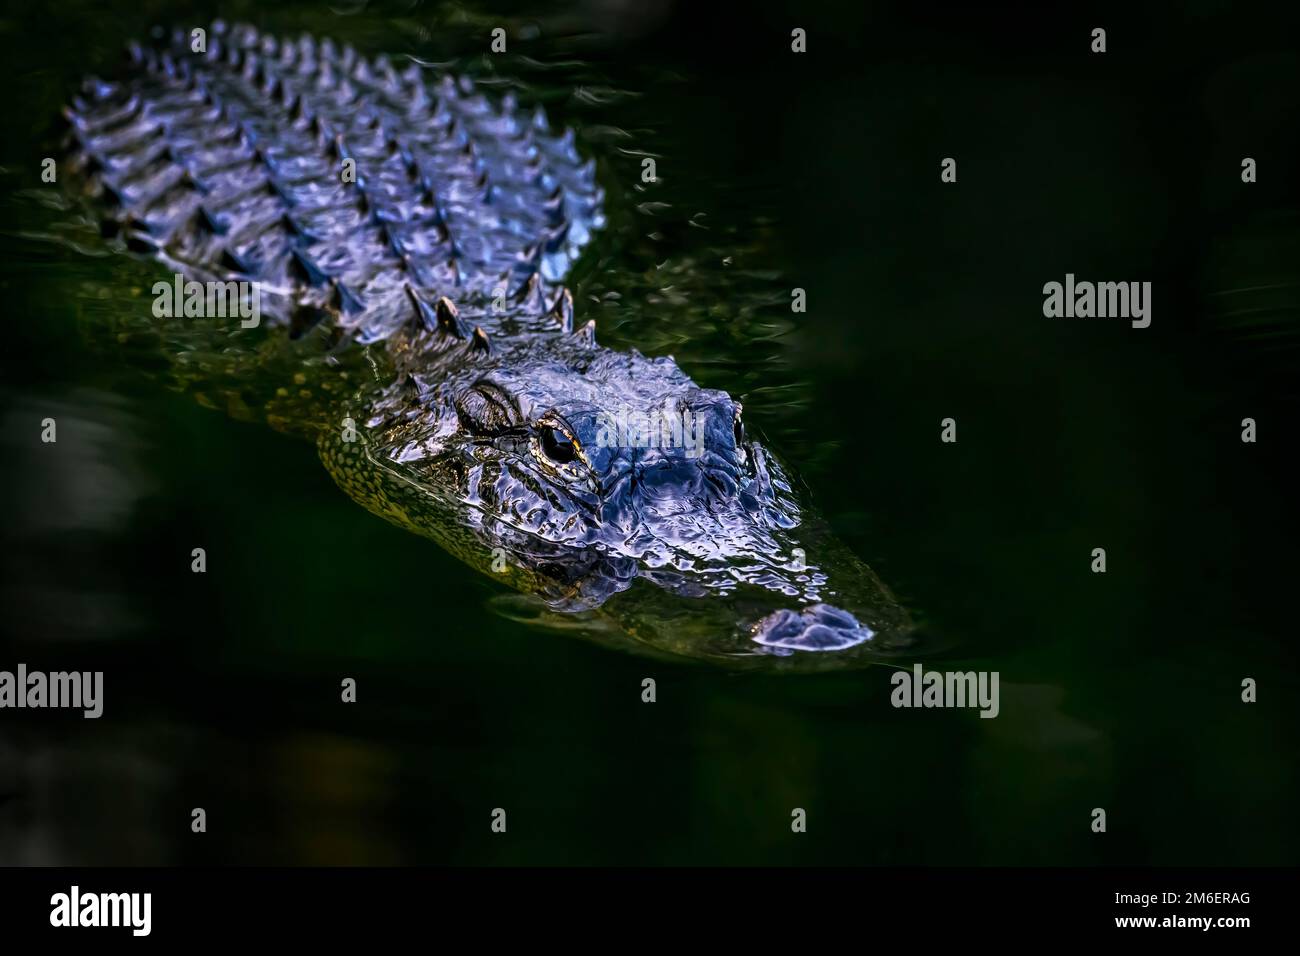 Amerikanischer Alligator (Alligator mississippiensis), versteckt im dunklen Wasser, Big Cypress National Reserve, Florida, Vereinigte Staaten. Stockfoto